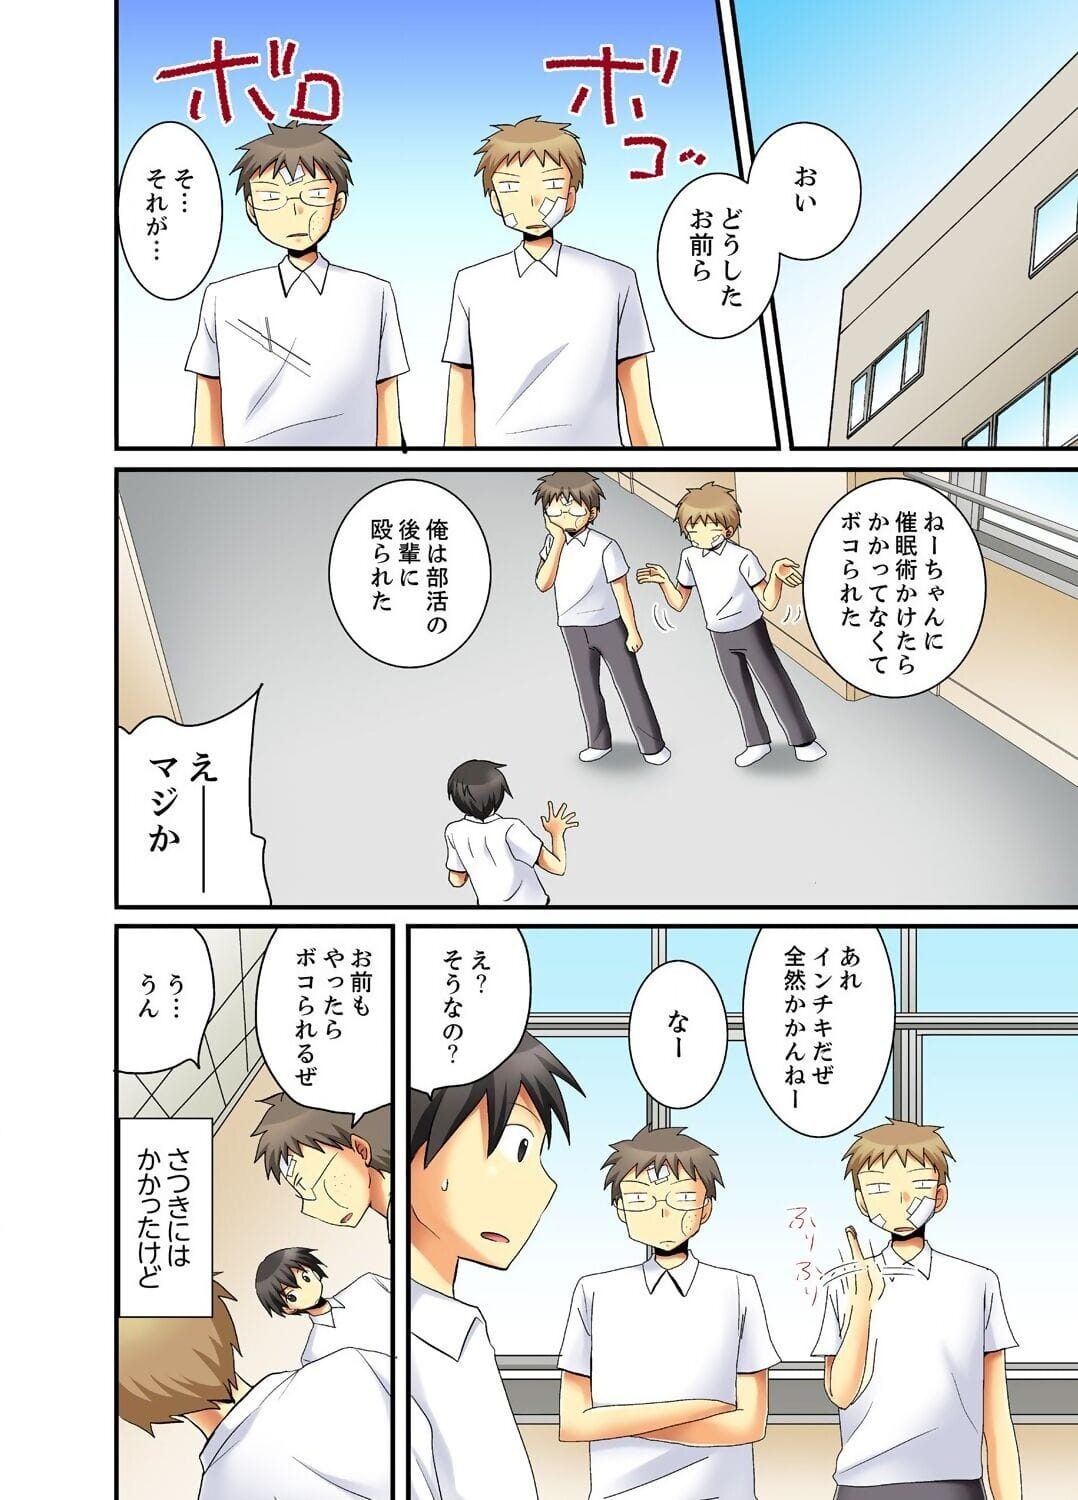 kanjiyasui osanajimi para saimi h!? page 1